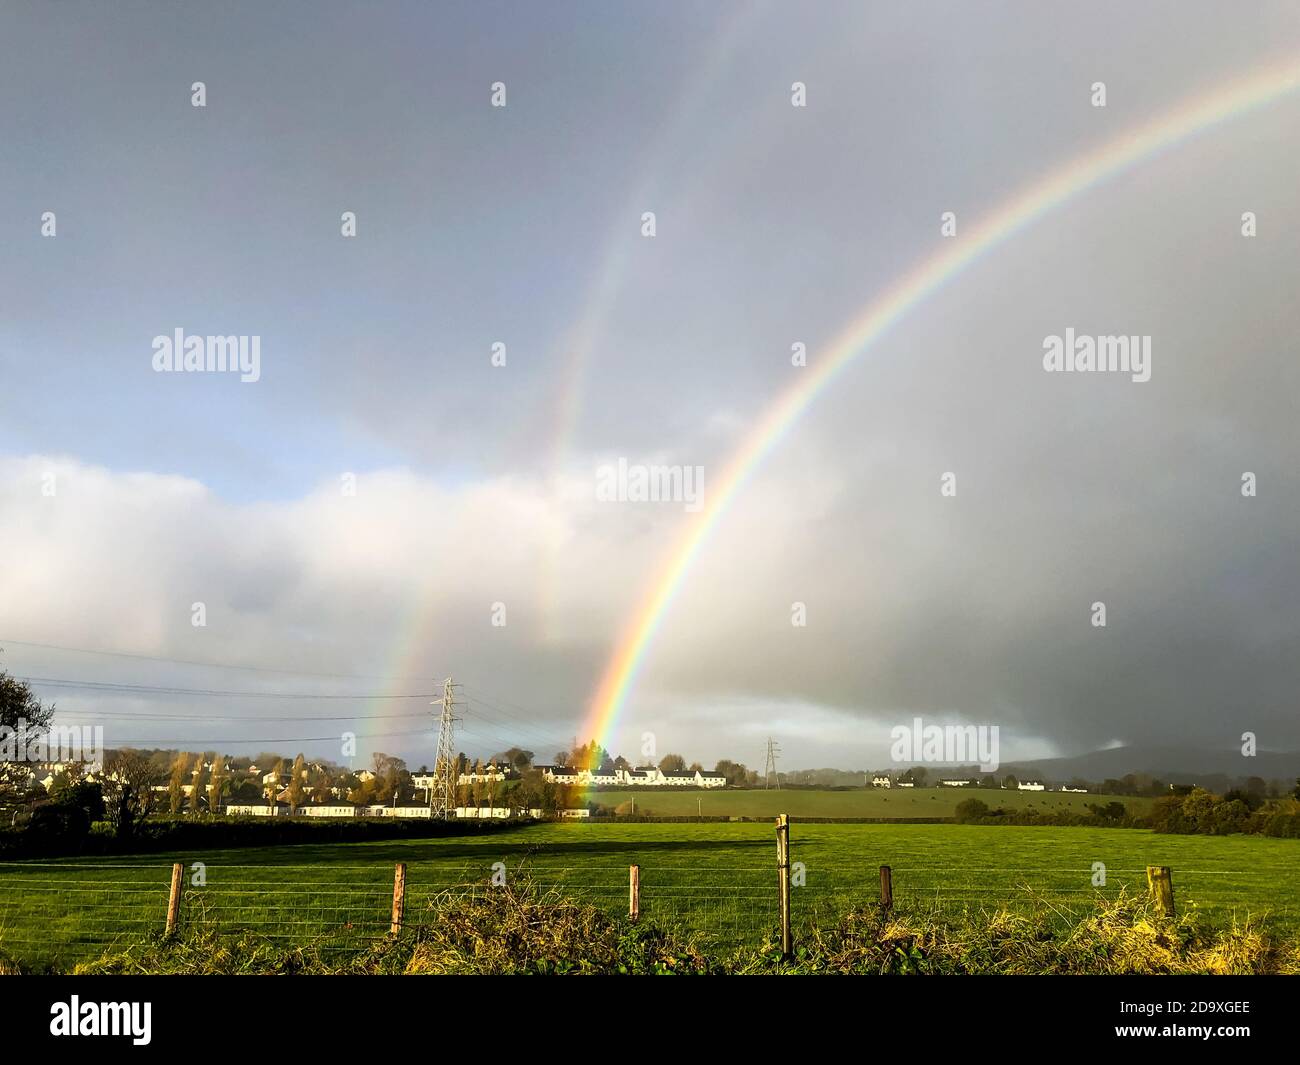 Seltenes natürliches Vorkommen von drei simultanen Regenbögen, die in der aufgenommen wurden Irische Landschaft Stockfoto